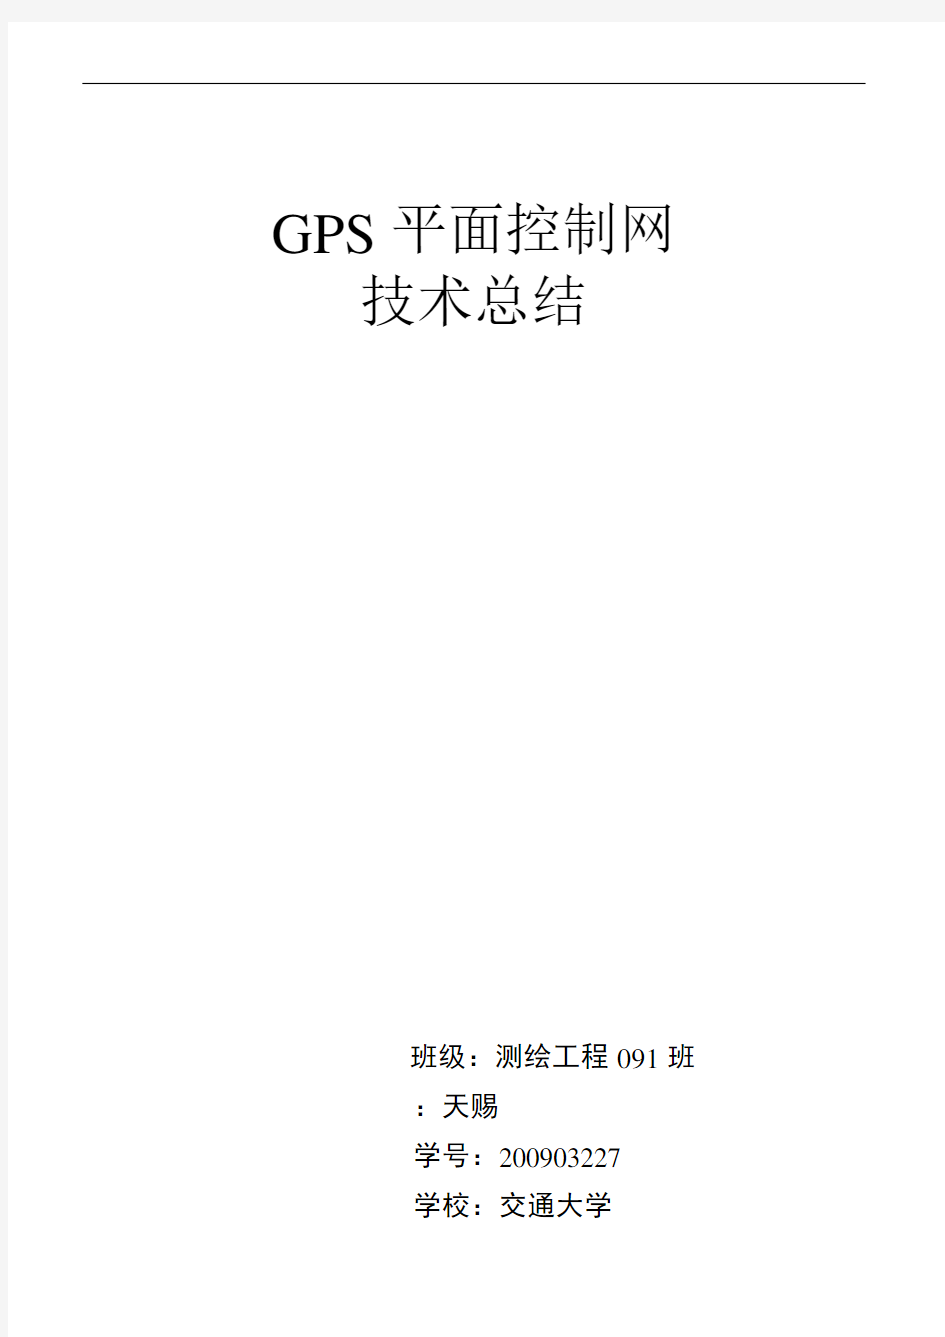 GPS控制网技术总结材料